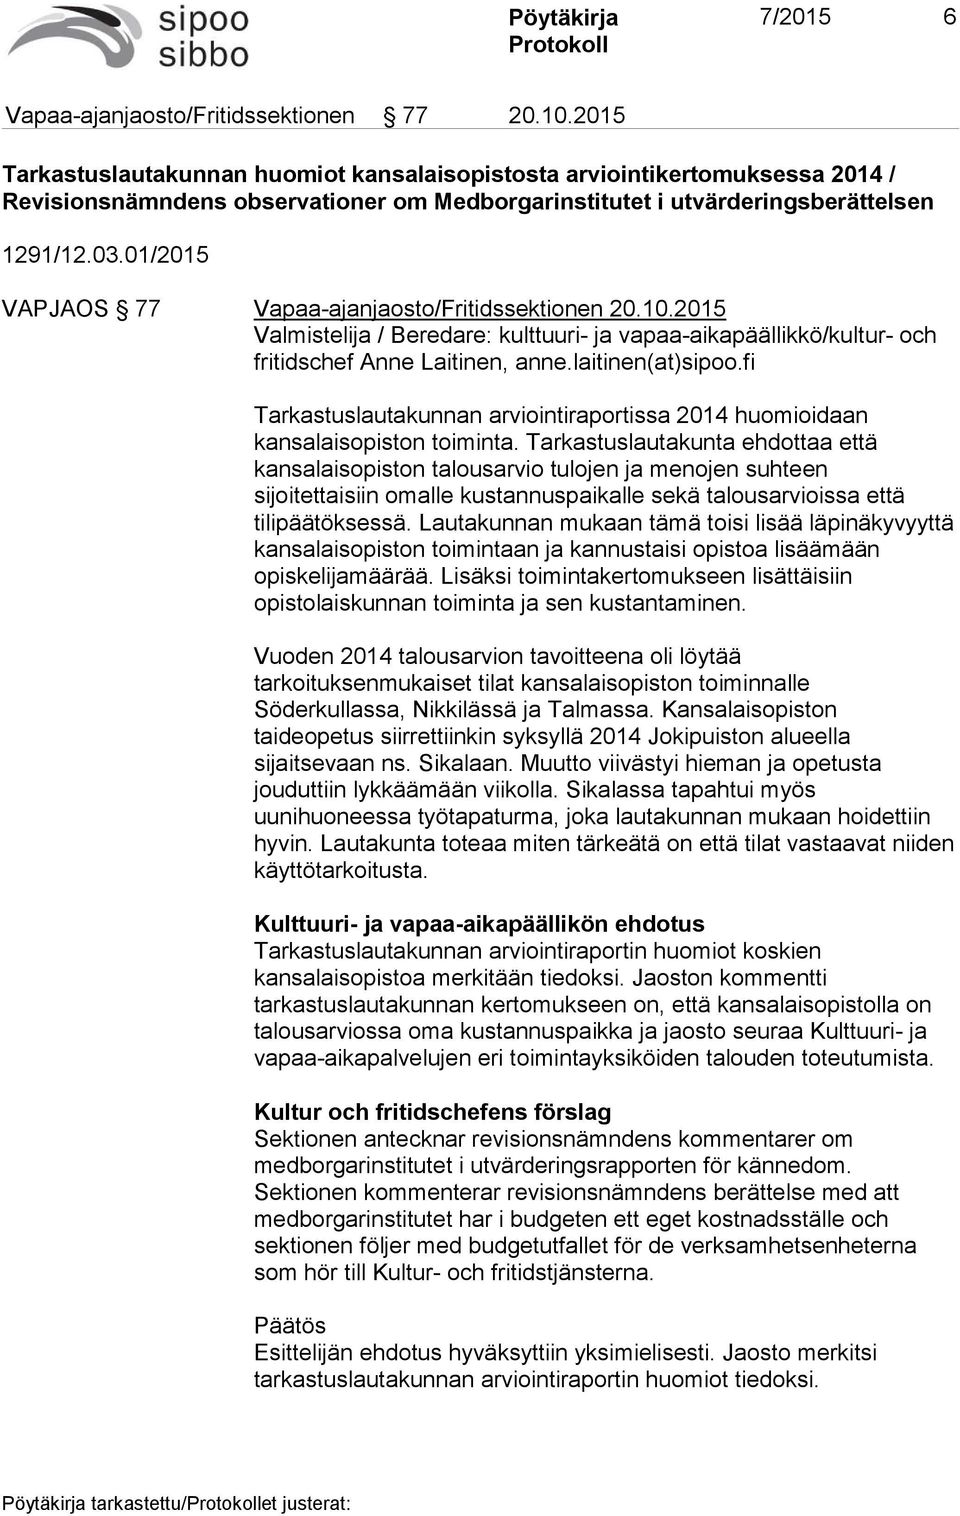 01/2015 VAPJAOS 77 Vapaa-ajanjaosto/Fritidssektionen 20.10.2015 Valmistelija / Beredare: kulttuuri- ja vapaa-aikapäällikkö/kultur- och fritidschef Anne Laitinen, anne.laitinen(at)sipoo.